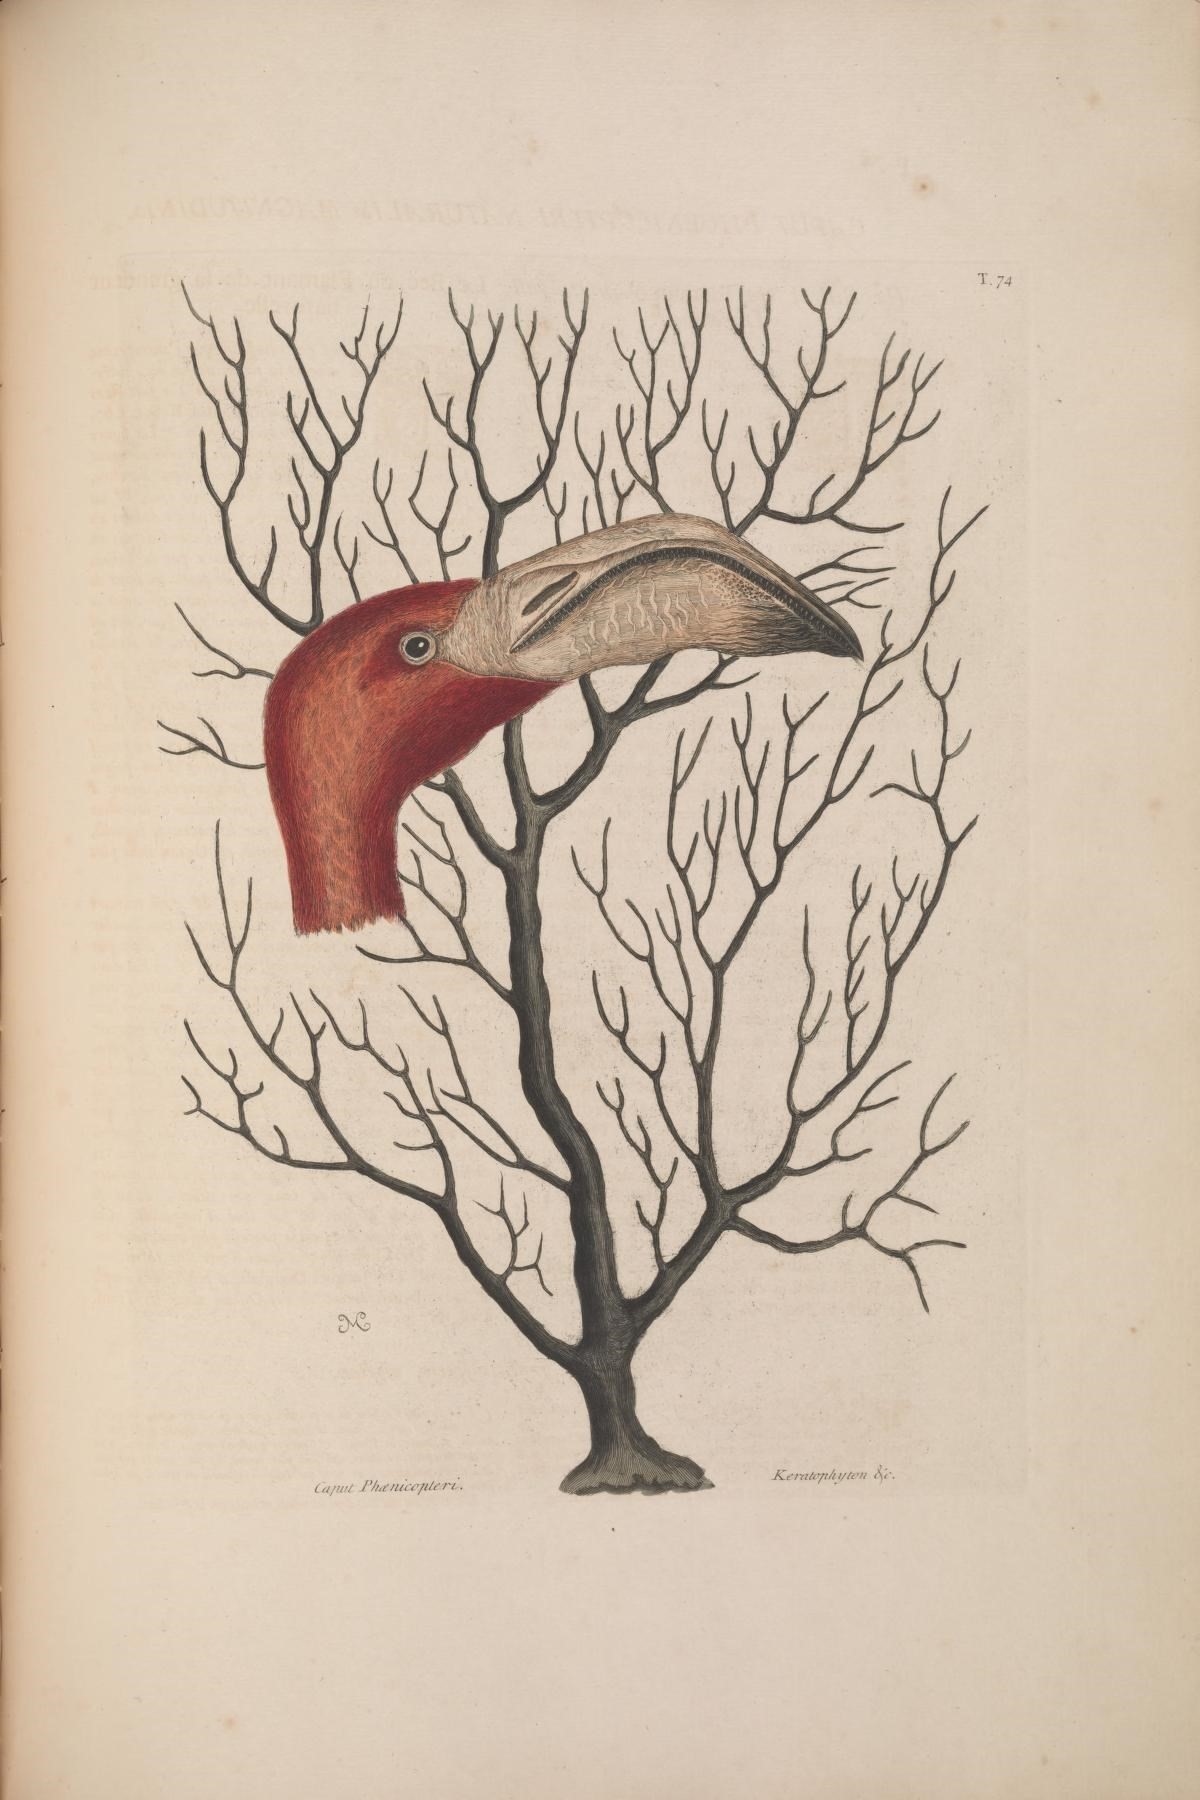 Image of Eunicea flexuosa (Lamouroux 1821)